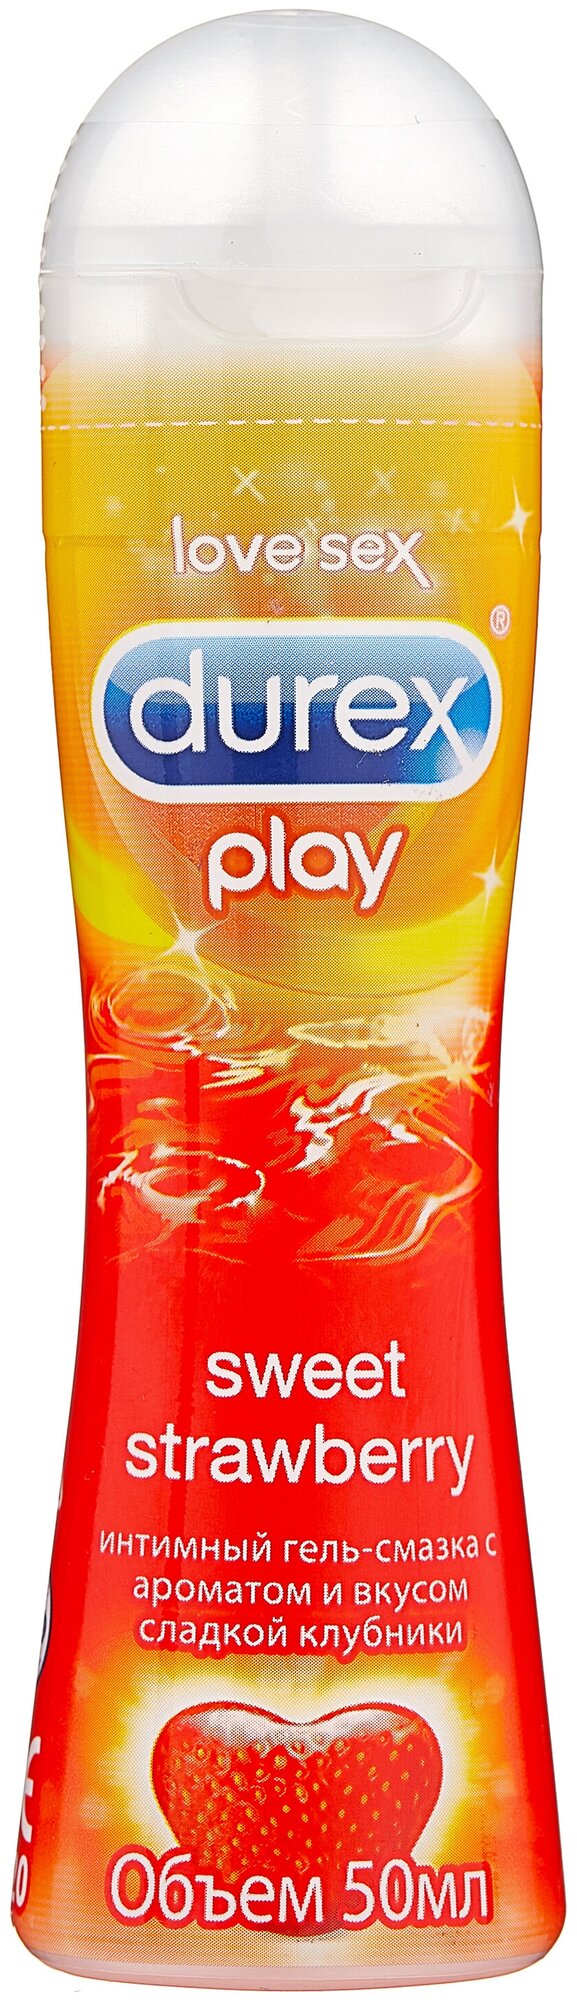 Гель-смазка Durex Play Sweet Strawberry c ароматом и вкусом сладкой клубники, 50 мл